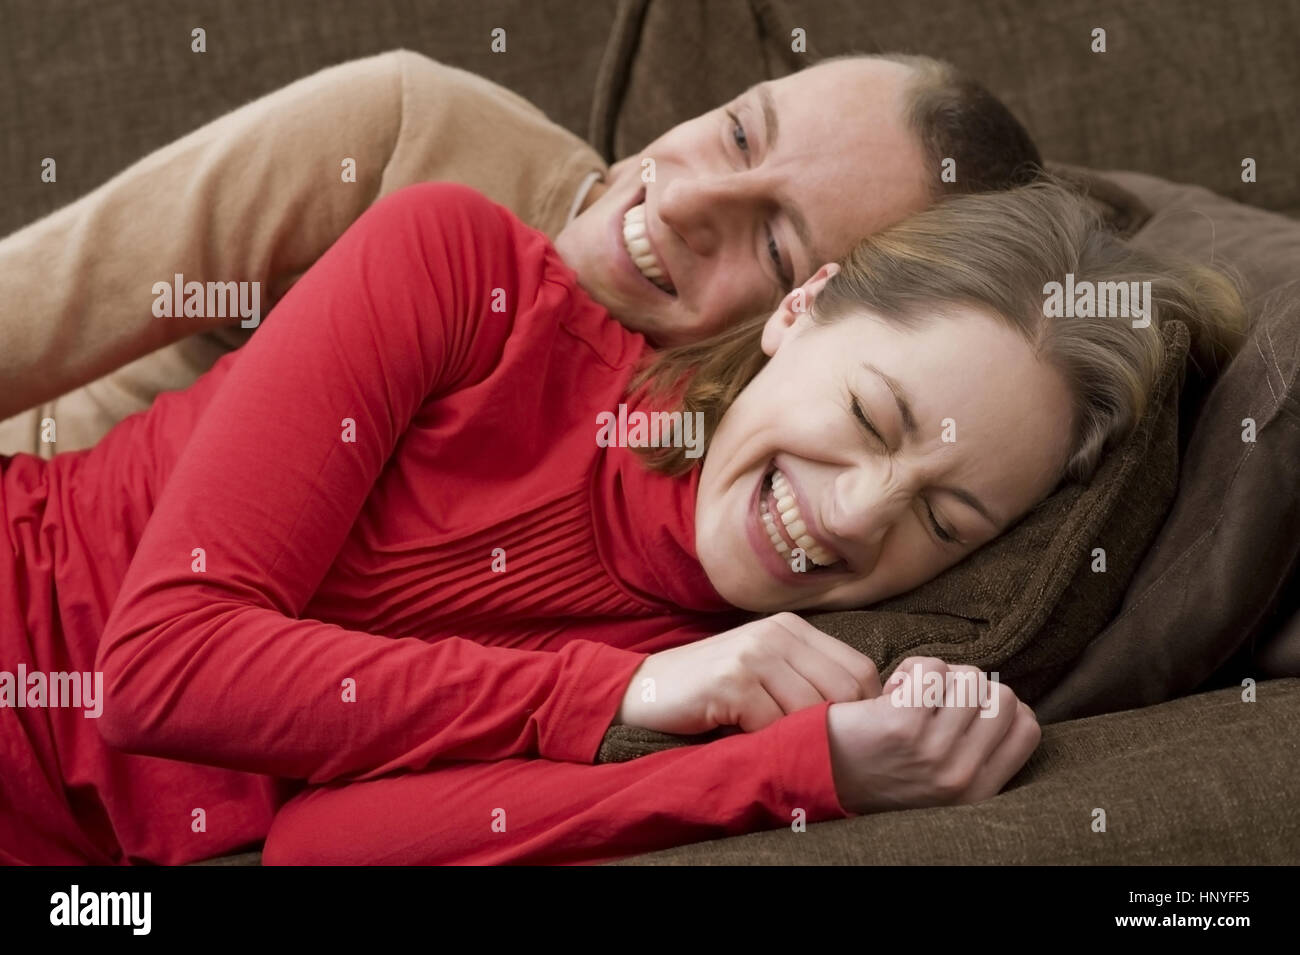 Model Release, Lachendes Liebespaar so Gemeinsam Auf der Couch - Glück liebe paar auf einer couch Stockfoto